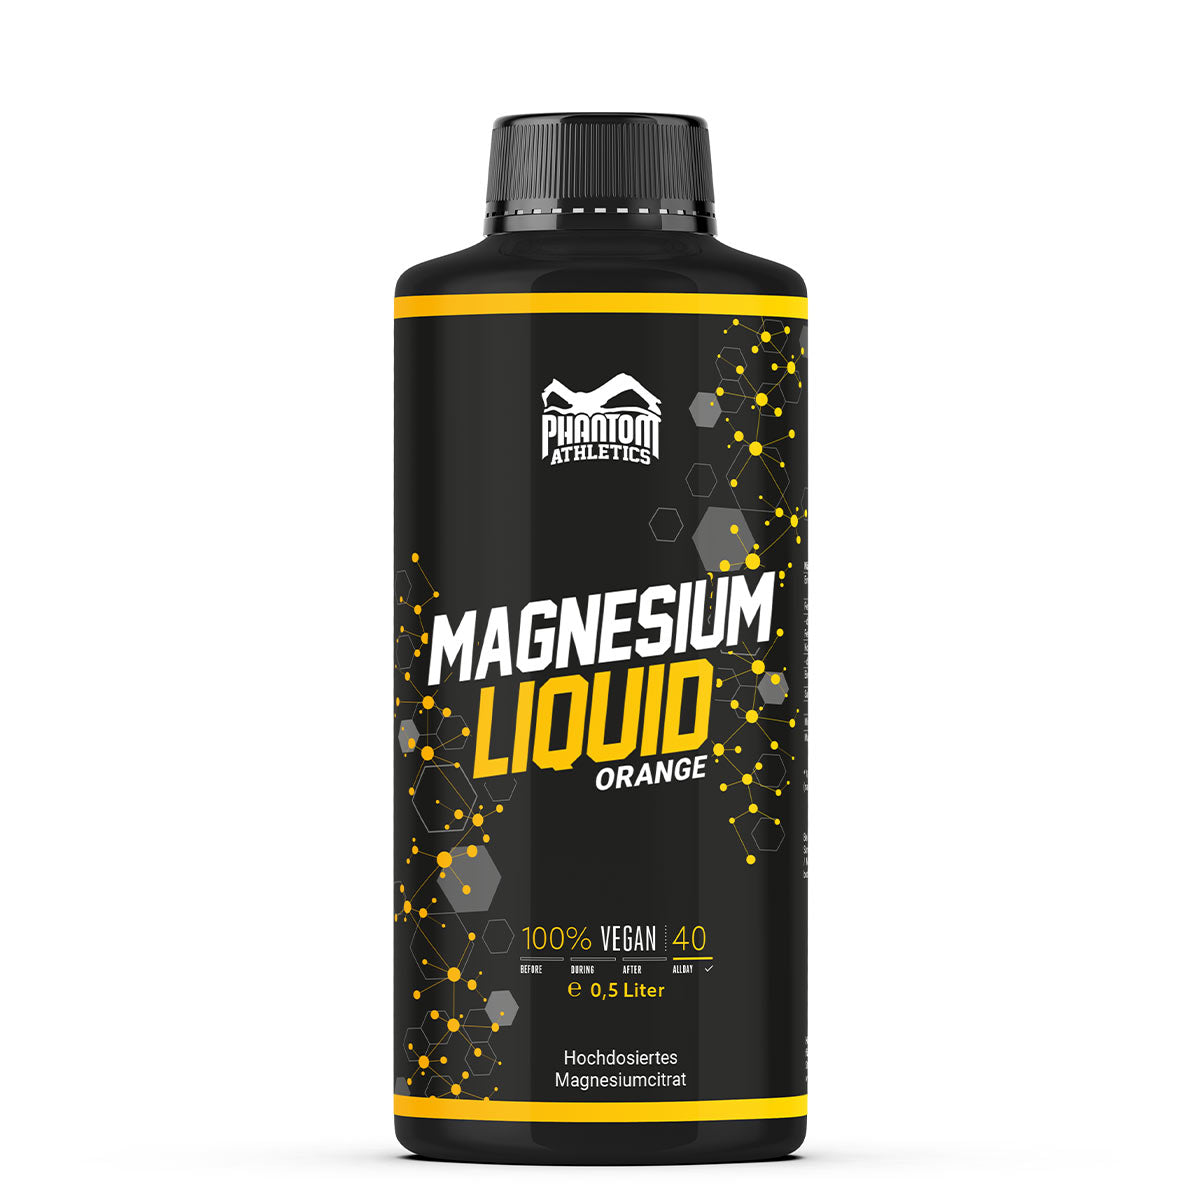 Phantom Magnesium Liquid - Flüssiges Magnesium für eine bessere Regeneration im Kampfsport.